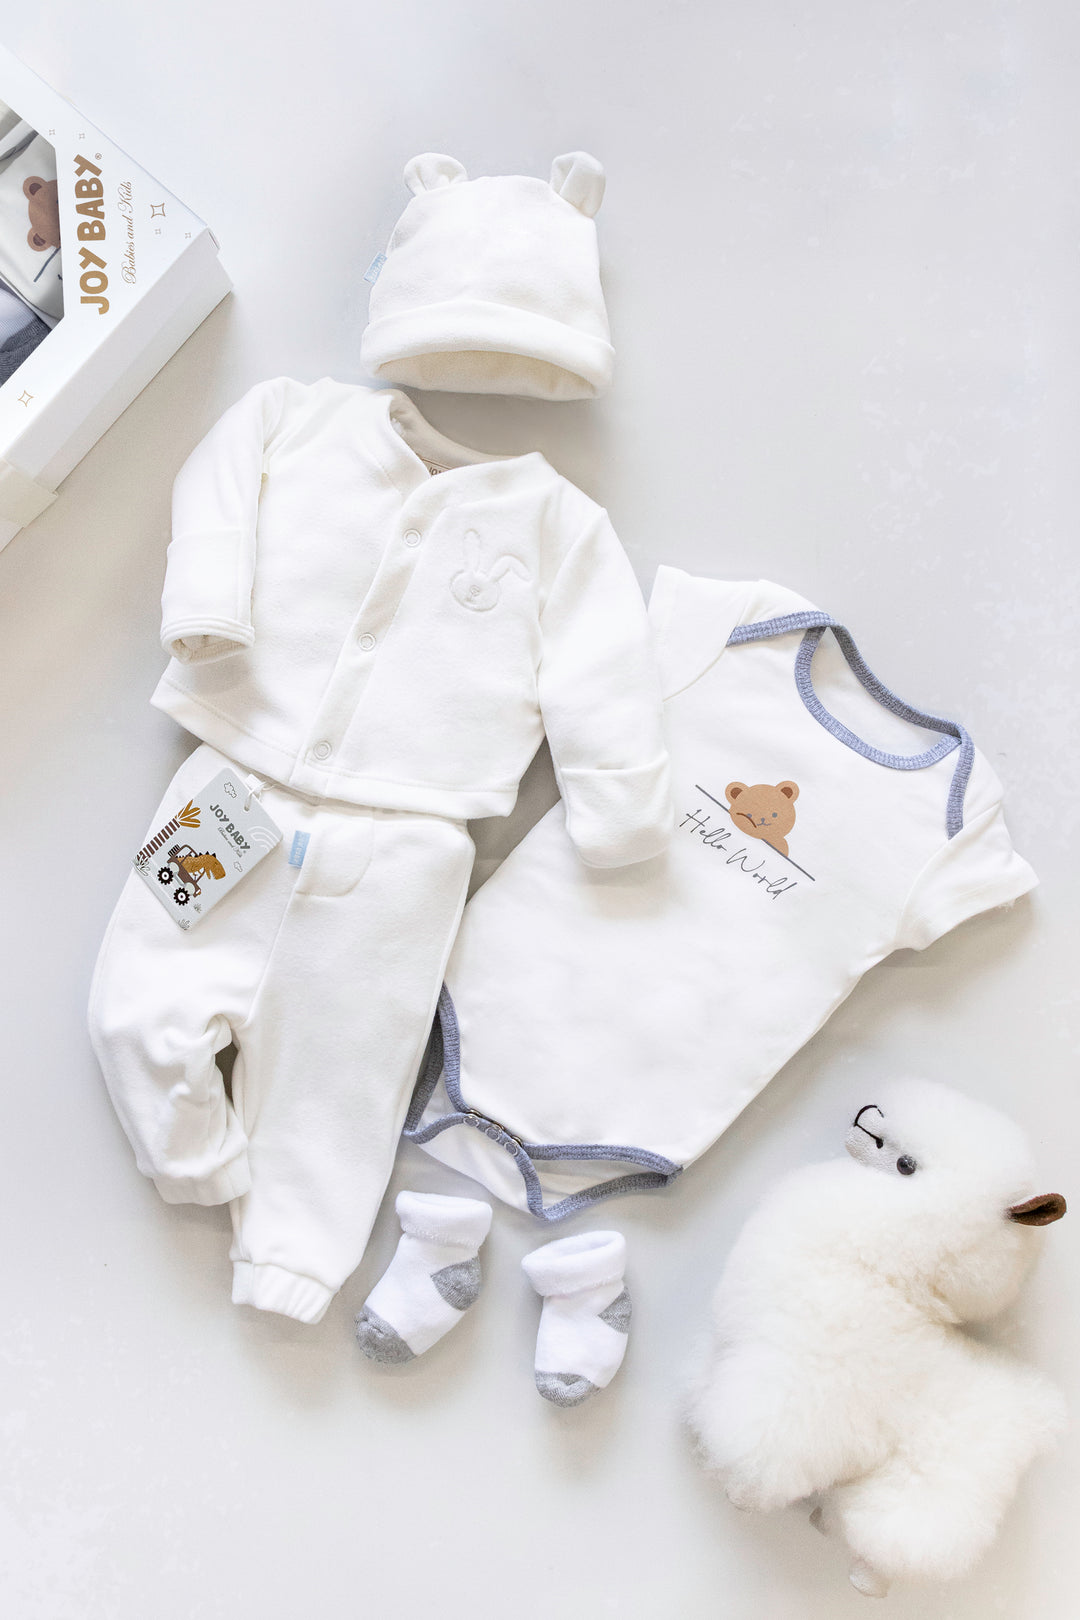 Comprar online ropa para recién nacido